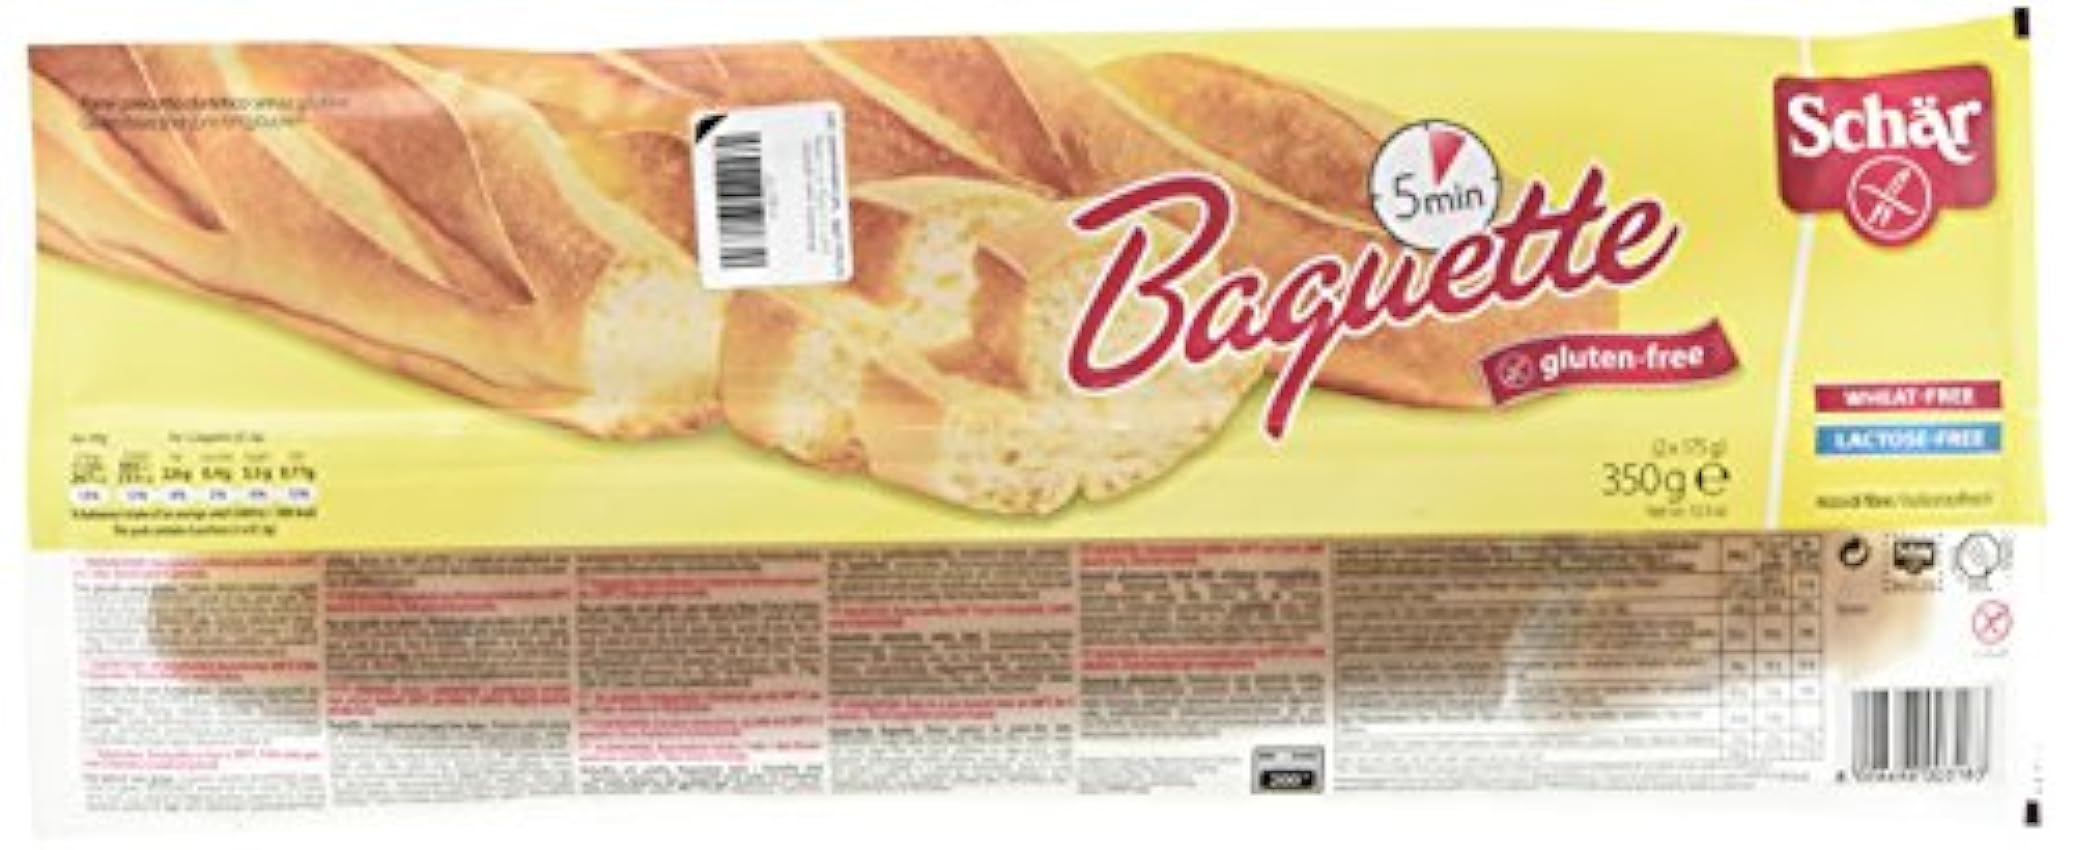 Schar - Baguettes sans gluten X2 (350 g) o1puMO6H